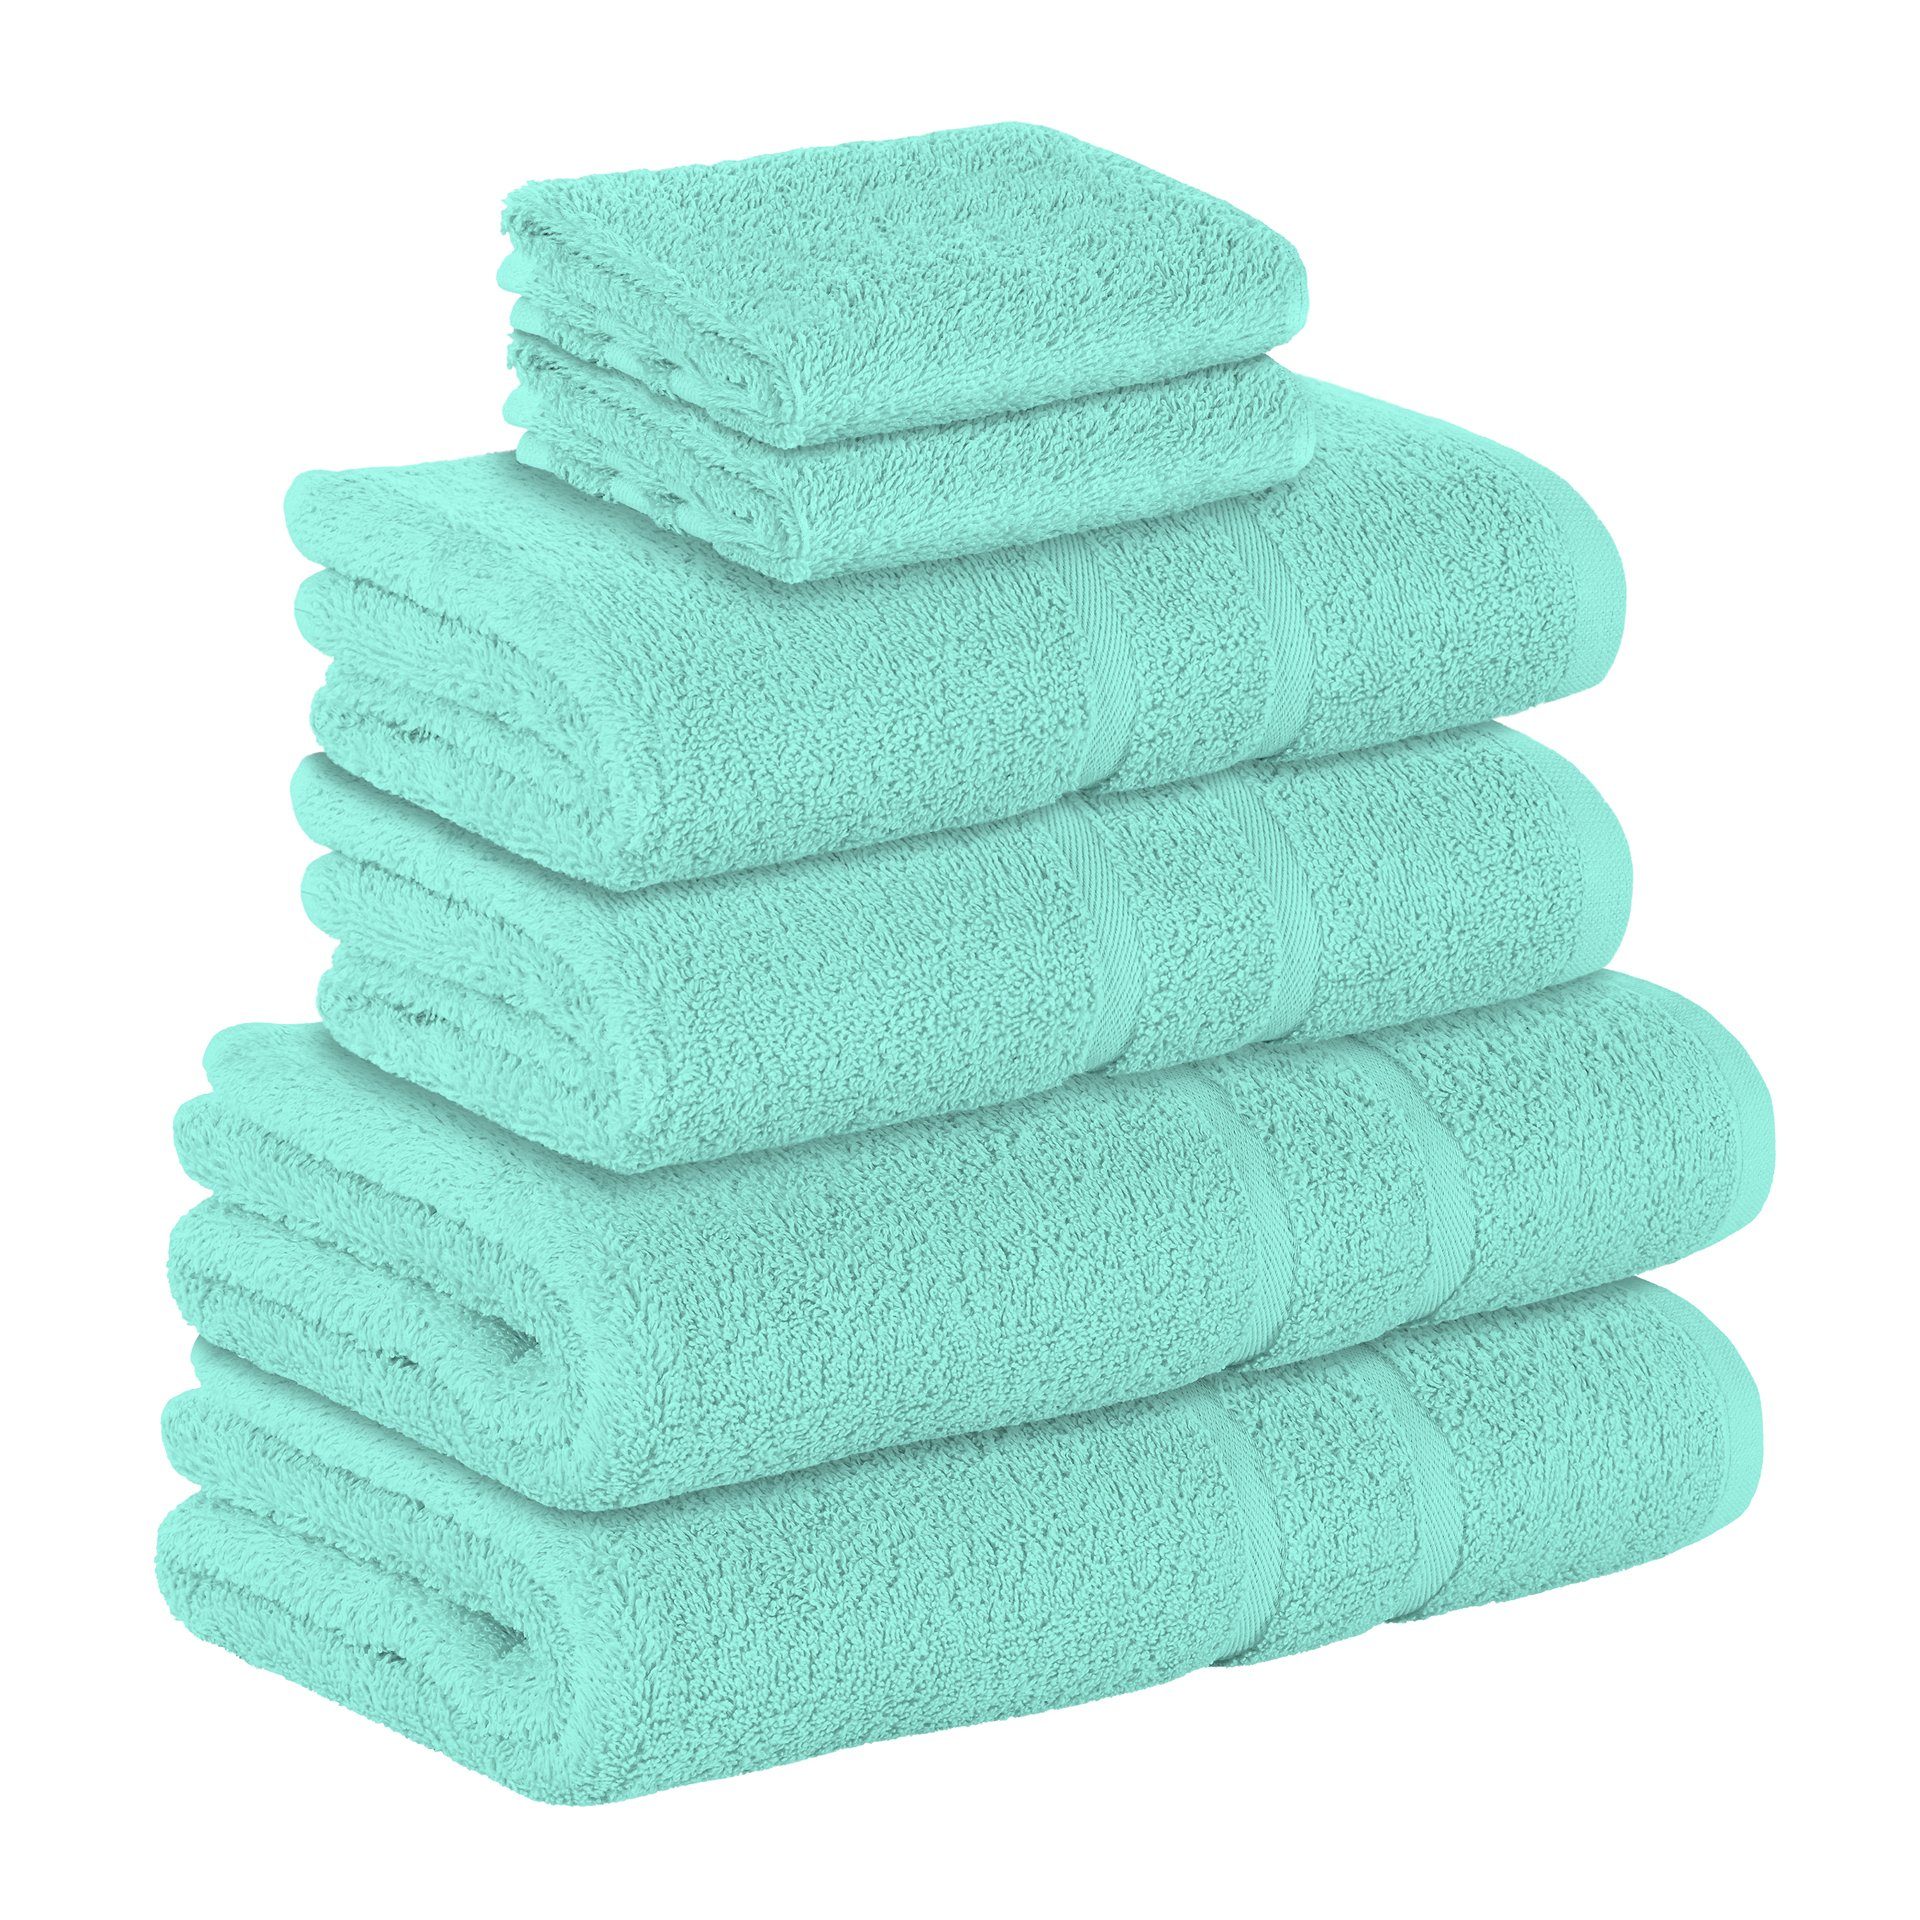 StickandShine Handtuch Set 2x Gästehandtuch 2x Handtücher 2x Duschtücher als SET in verschiedenen Farben (6 Teilig) 100% Baumwolle 500 GSM Frottee 6er Handtuch Pack, 100% Baumwolle 500GSM Mint | Handtuch-Sets